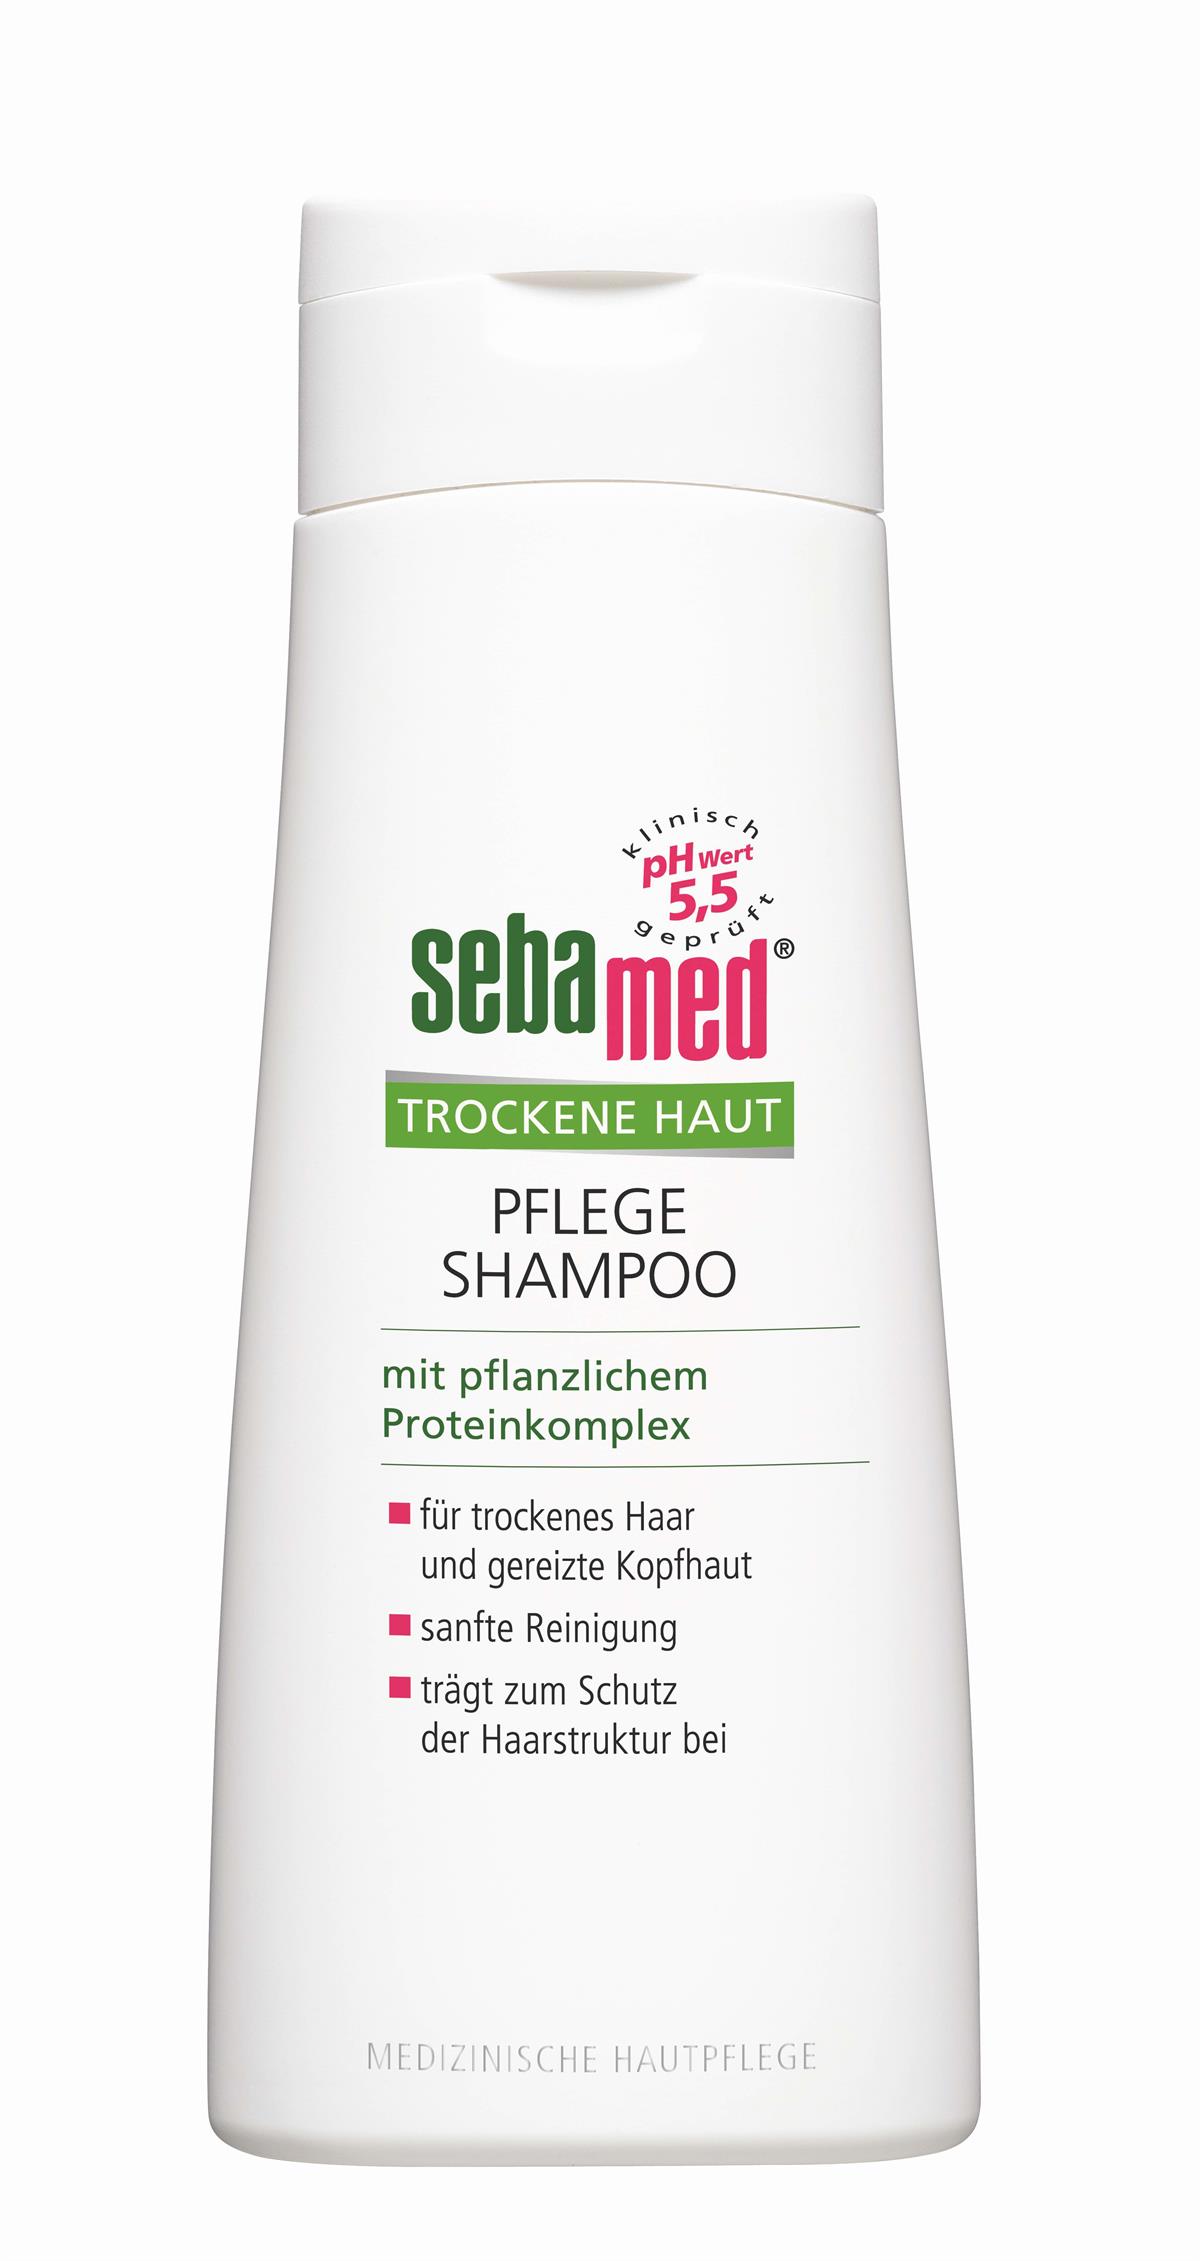 sebamed Trockene Haut Pflege Shampoo (200 ml)